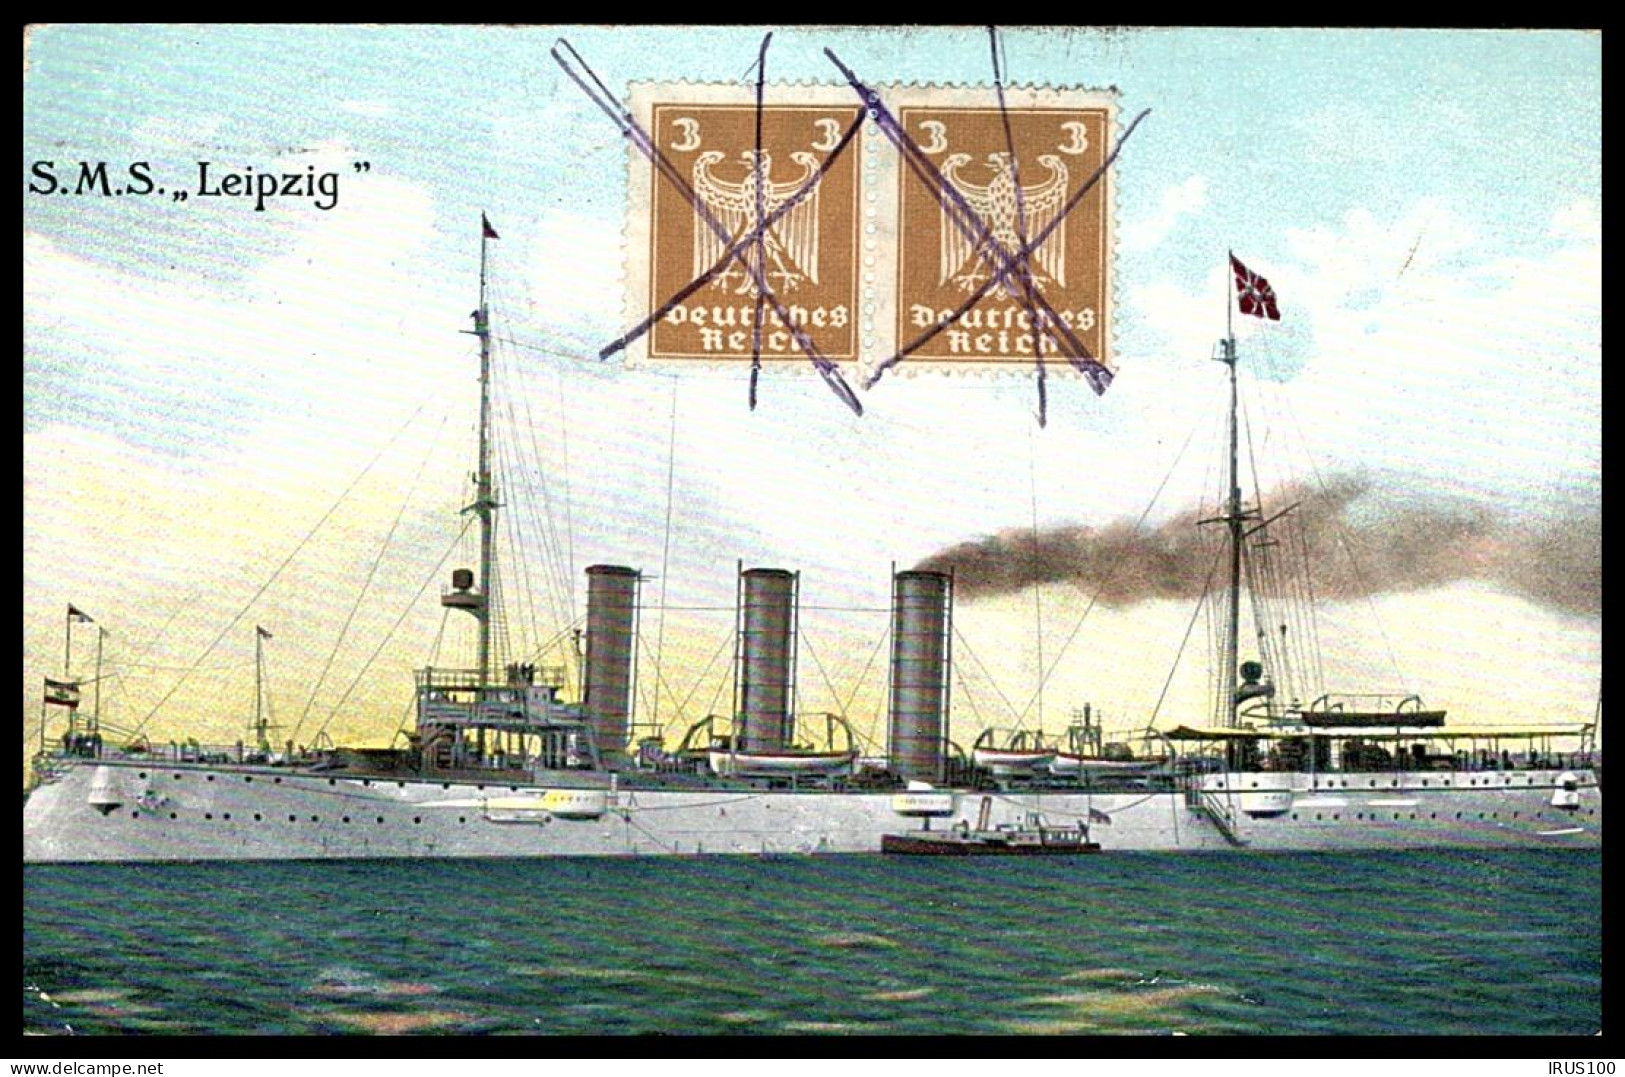 SMS Kl GESCH. KREUZER LEIPZIG - 1924 - - Warships